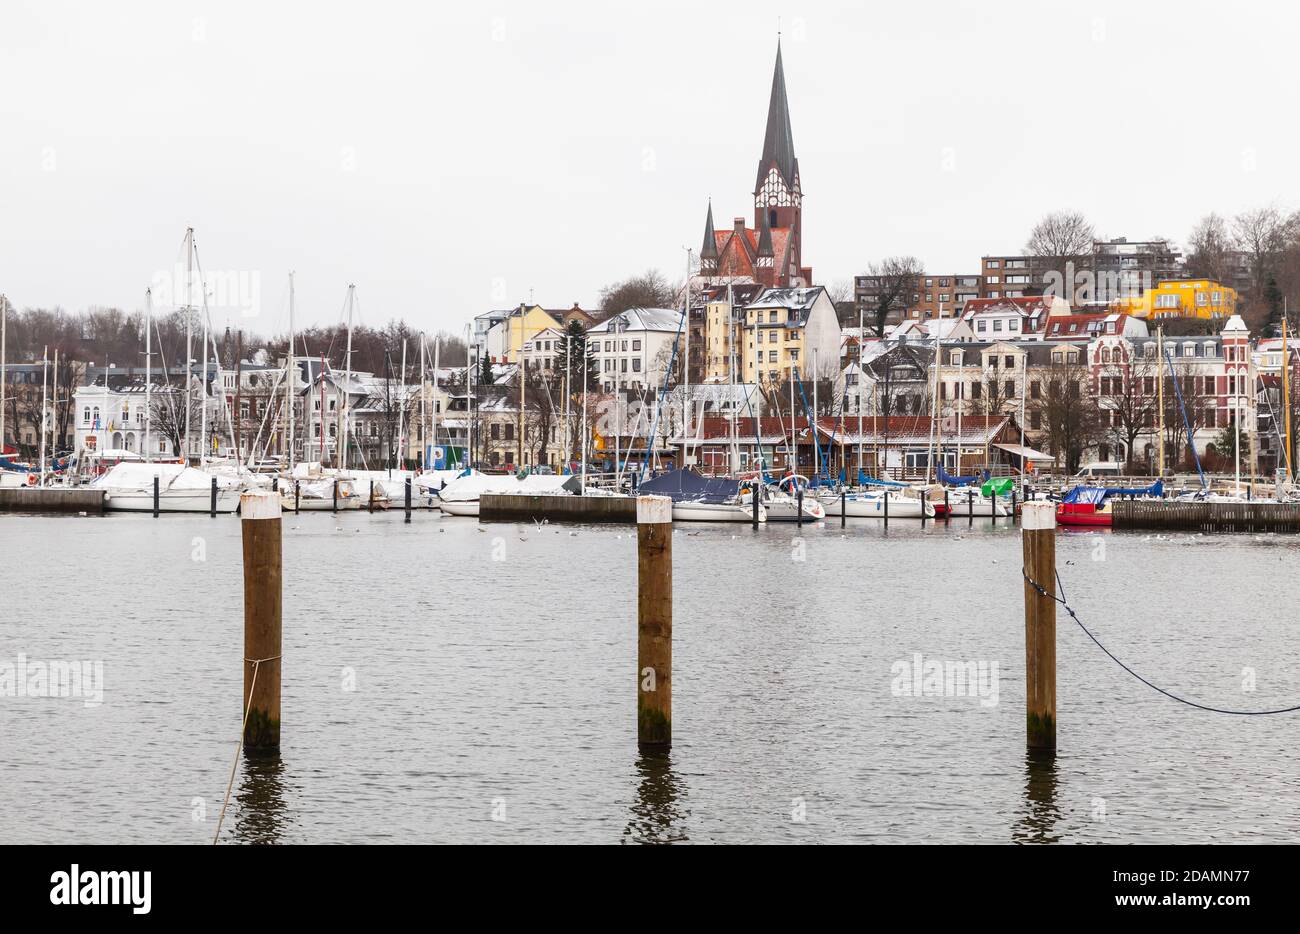 Flensburg Blick am Wintertag, Deutschland. Küstenlandschaft mit hölzernen Anlegestellen Säulen im Wasser stehen Stockfoto